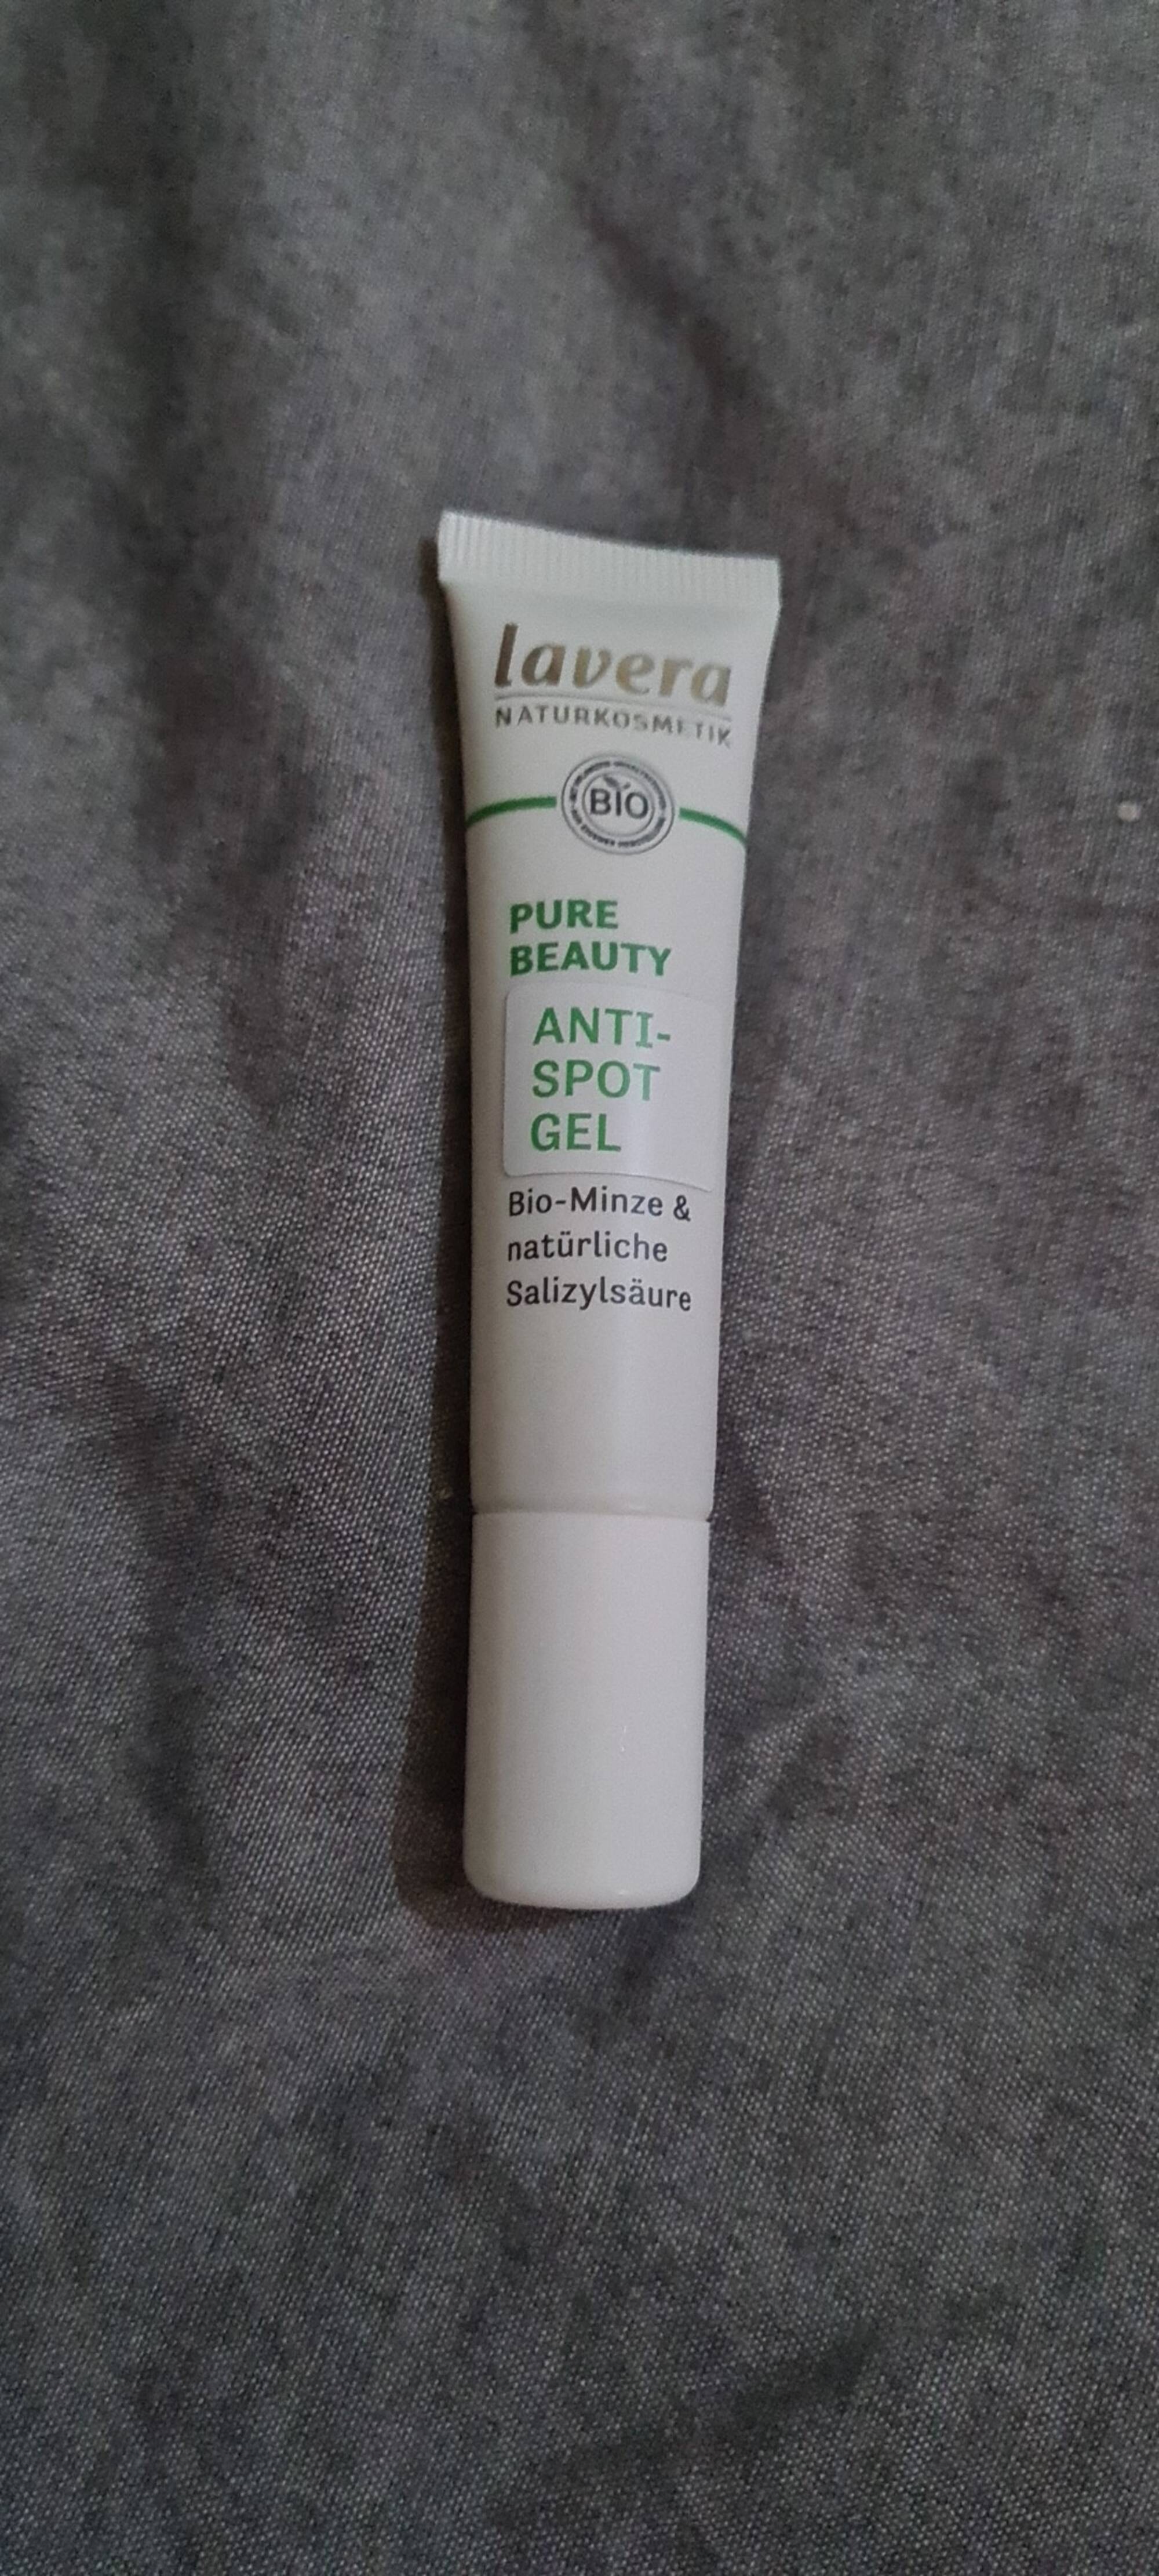 LAVERA NATURKOSMETIK - Pure Beauty - Anti-spot gel